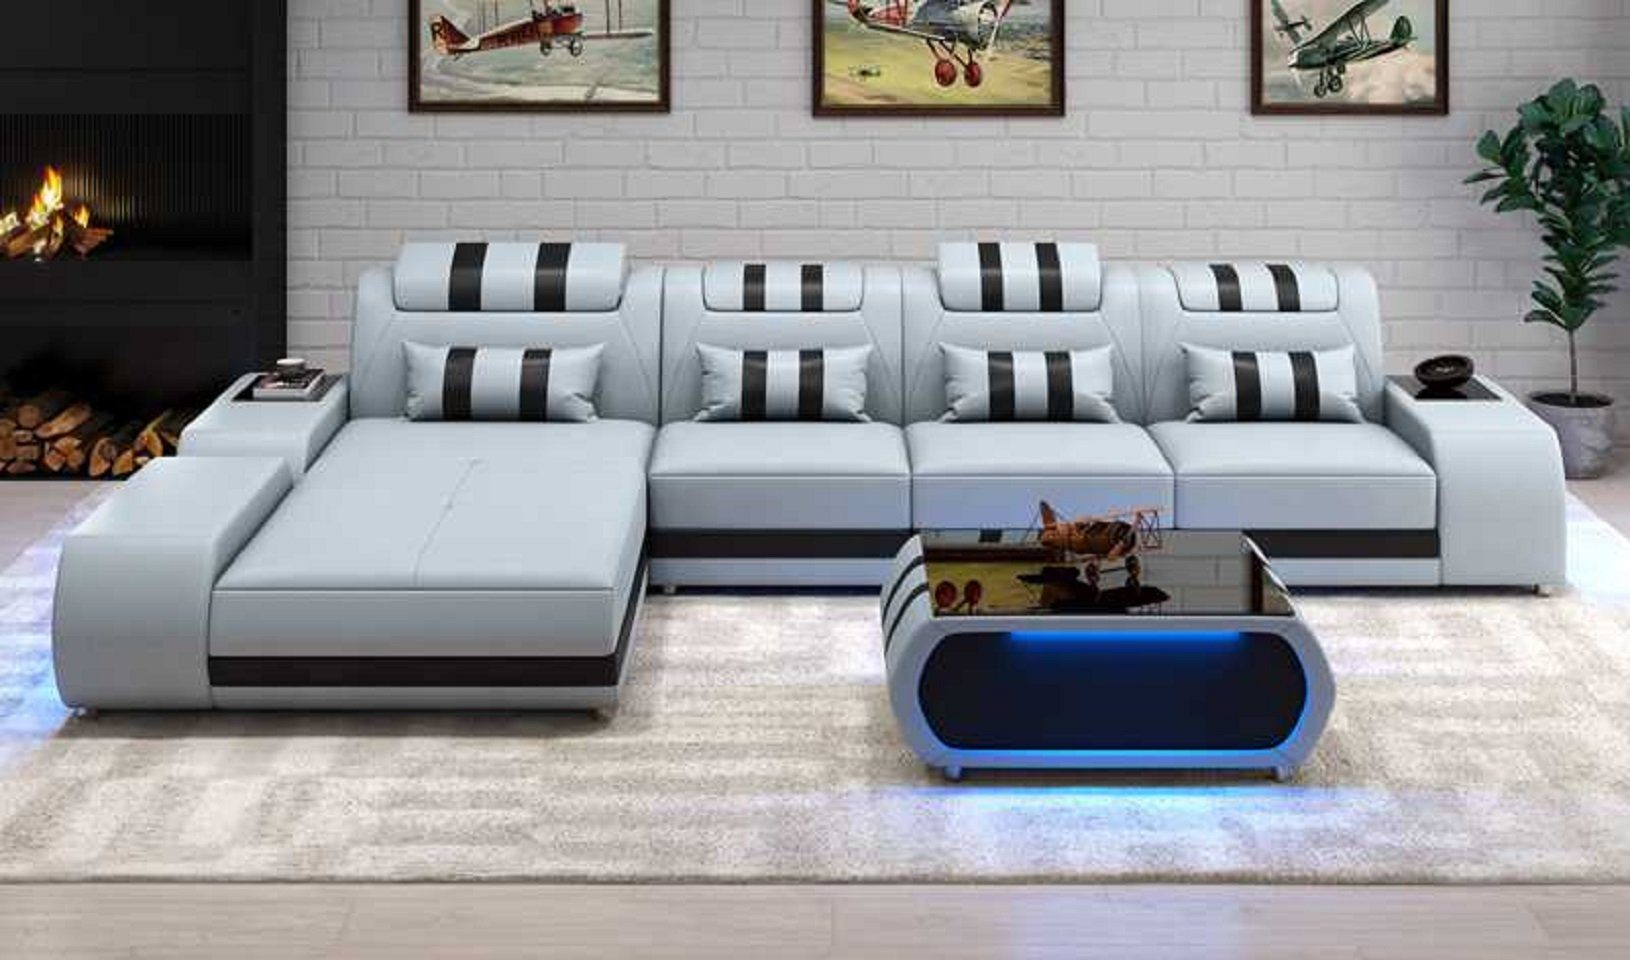 JVmoebel Ecksofa Eckgarnitur Ecksofa L Form Ledersofa Sofa Couch Luxus Design Couchen, 3 Teile, Made in Europe Grau | Ecksofas